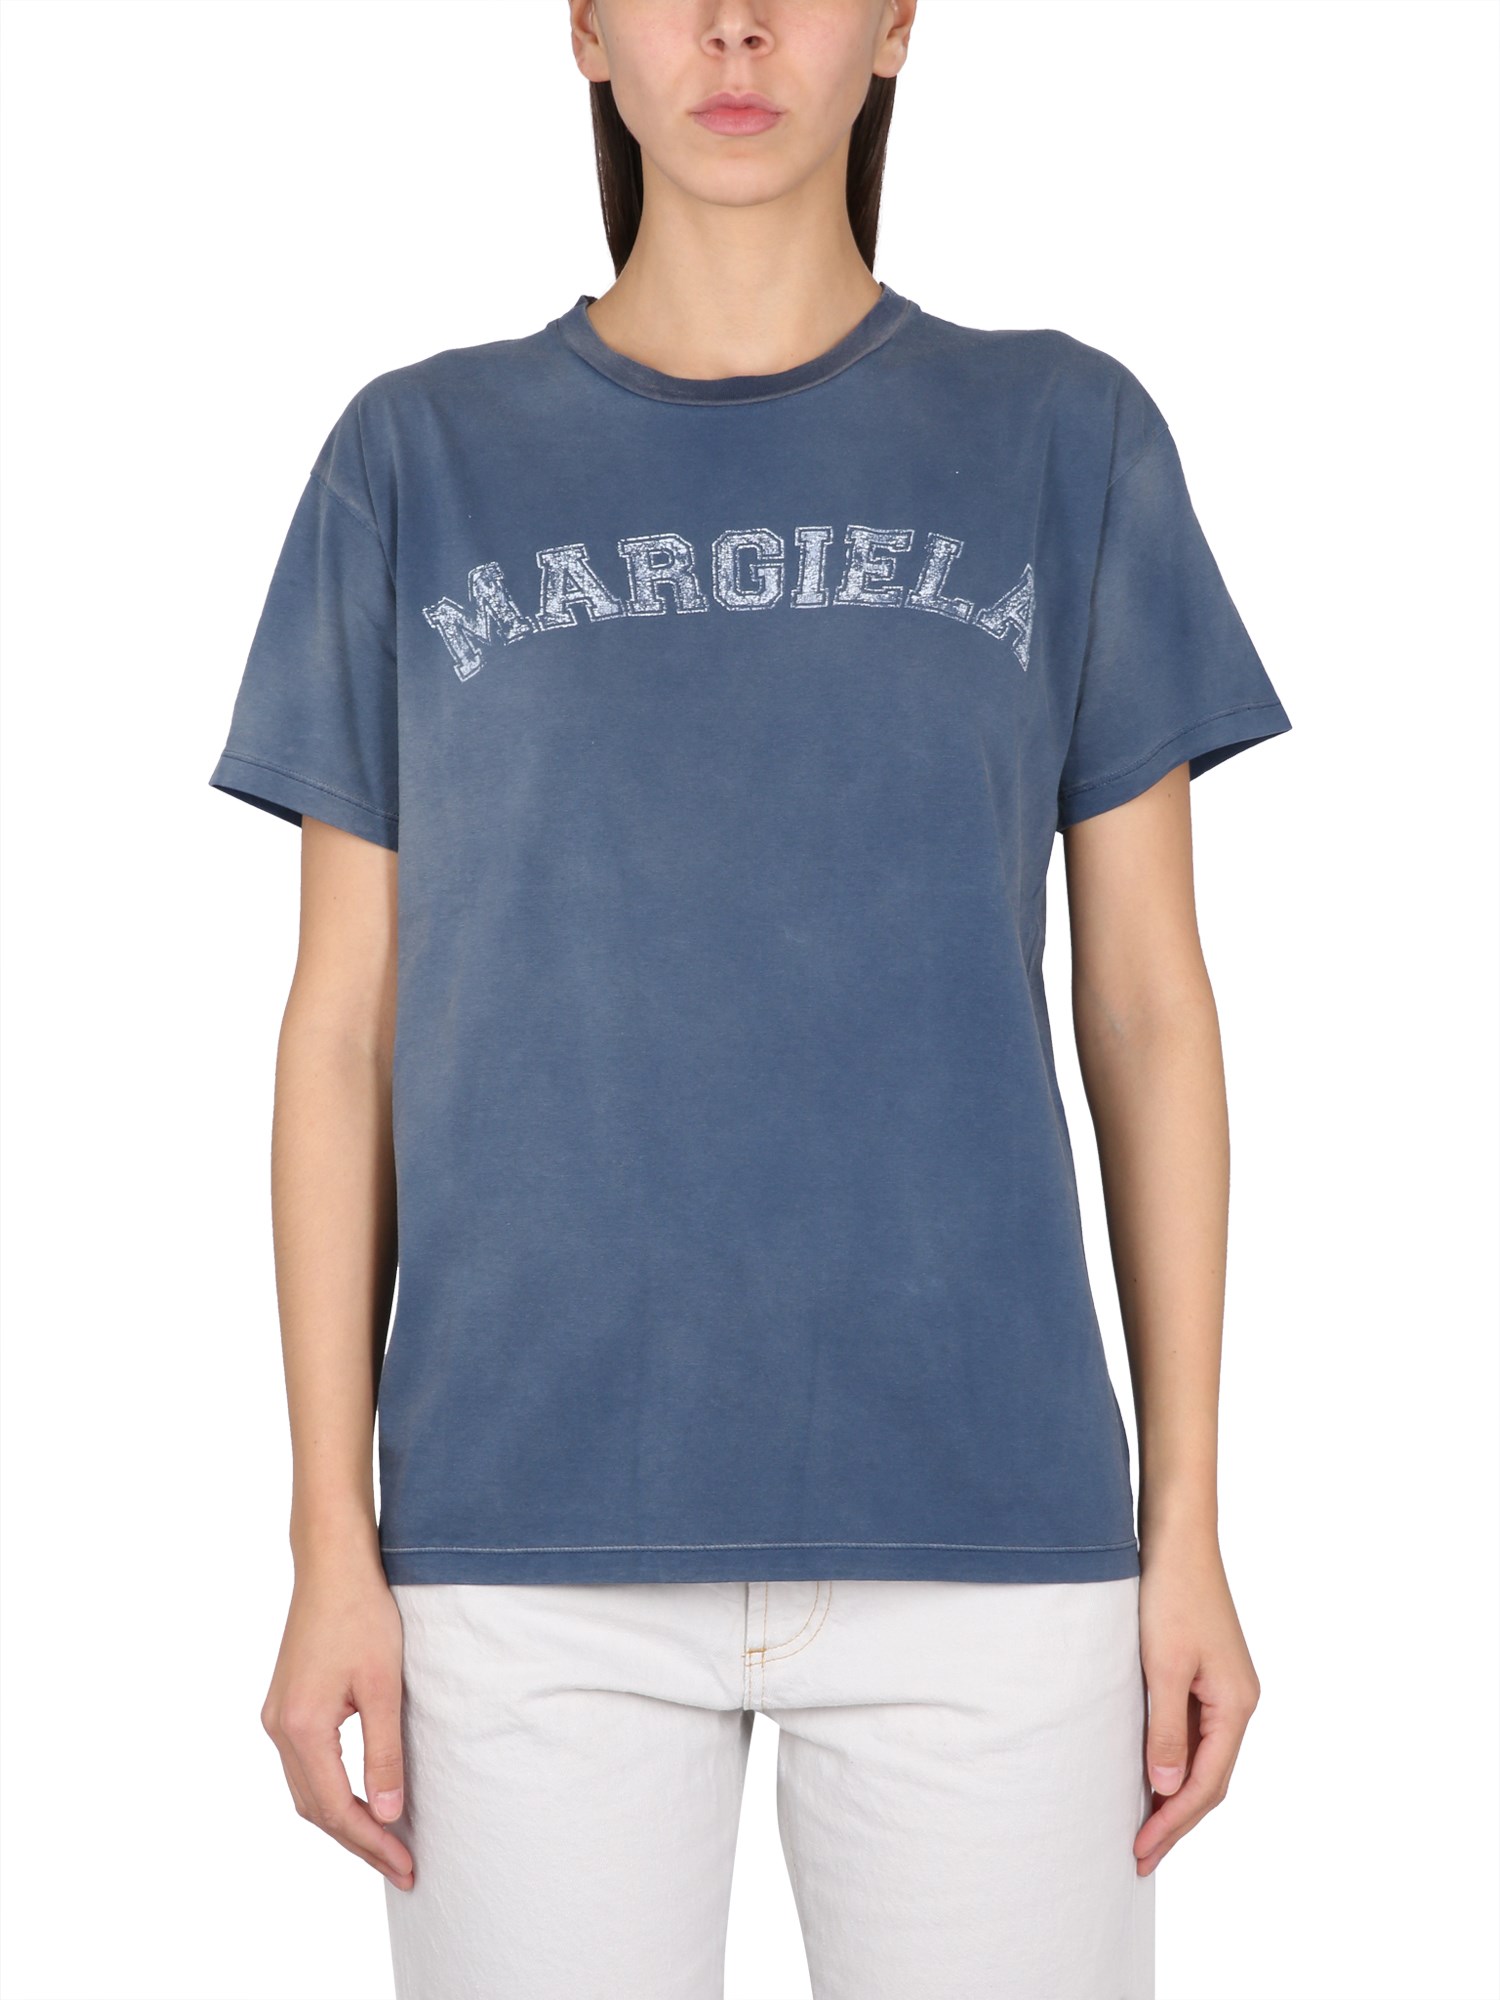 maison margiela t-shirt with logo